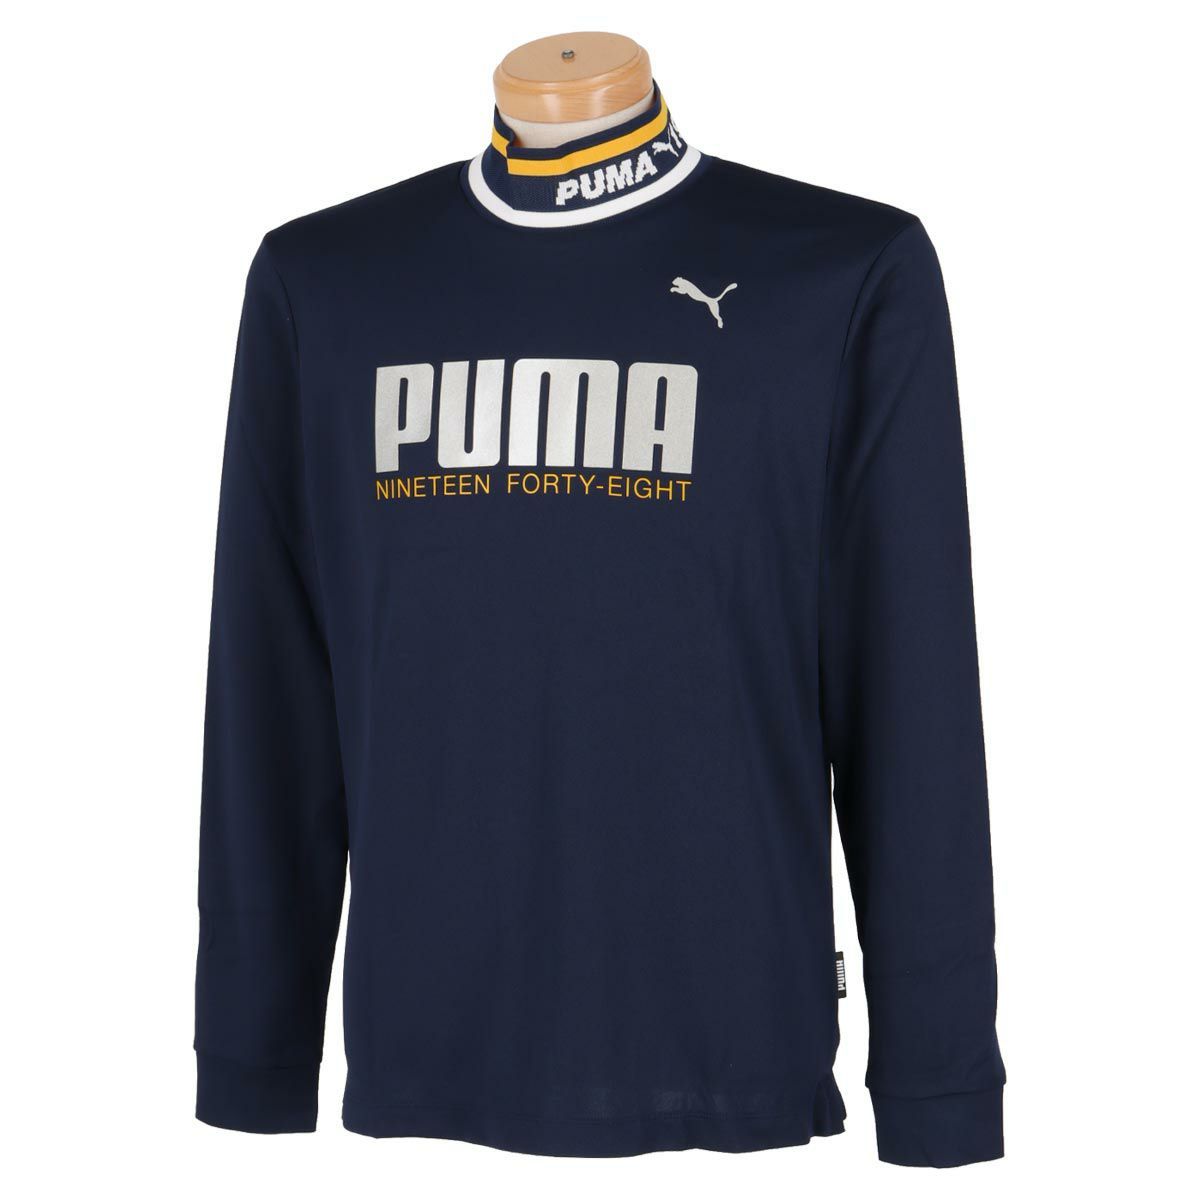  бесплатная доставка * новый товар *PUMA GOLF ребра цвет mok шея рубашка с длинным рукавом *(XL)*539365-02* Puma Golf 